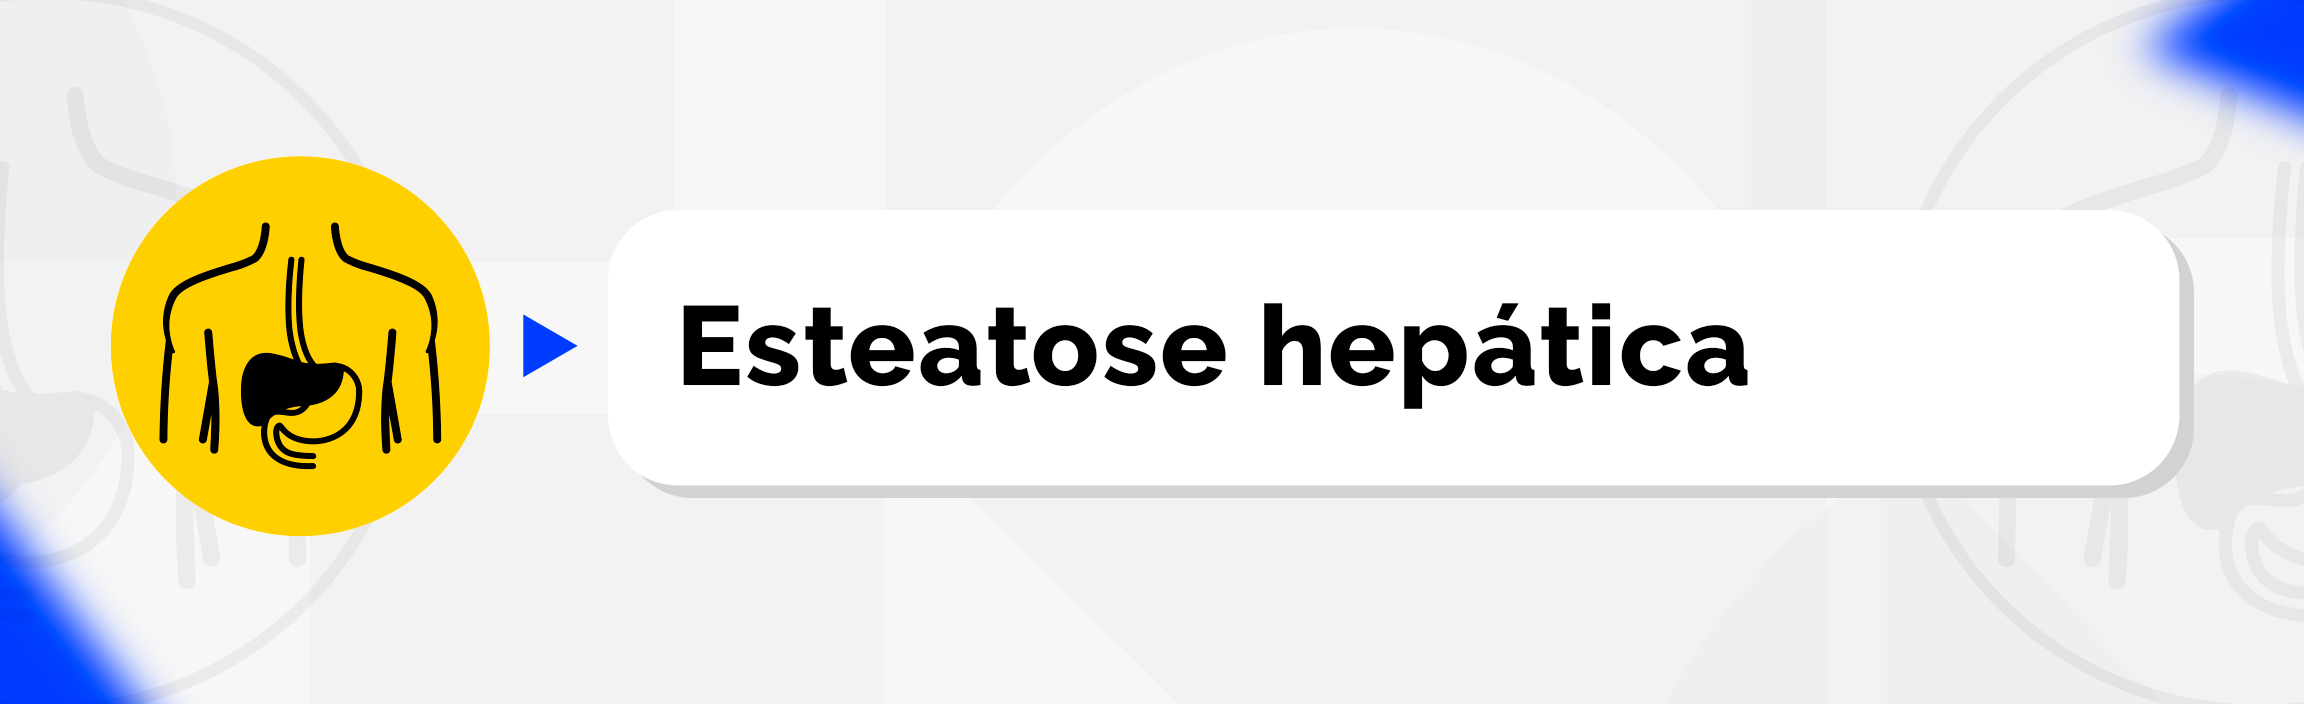 Esteatose hepática